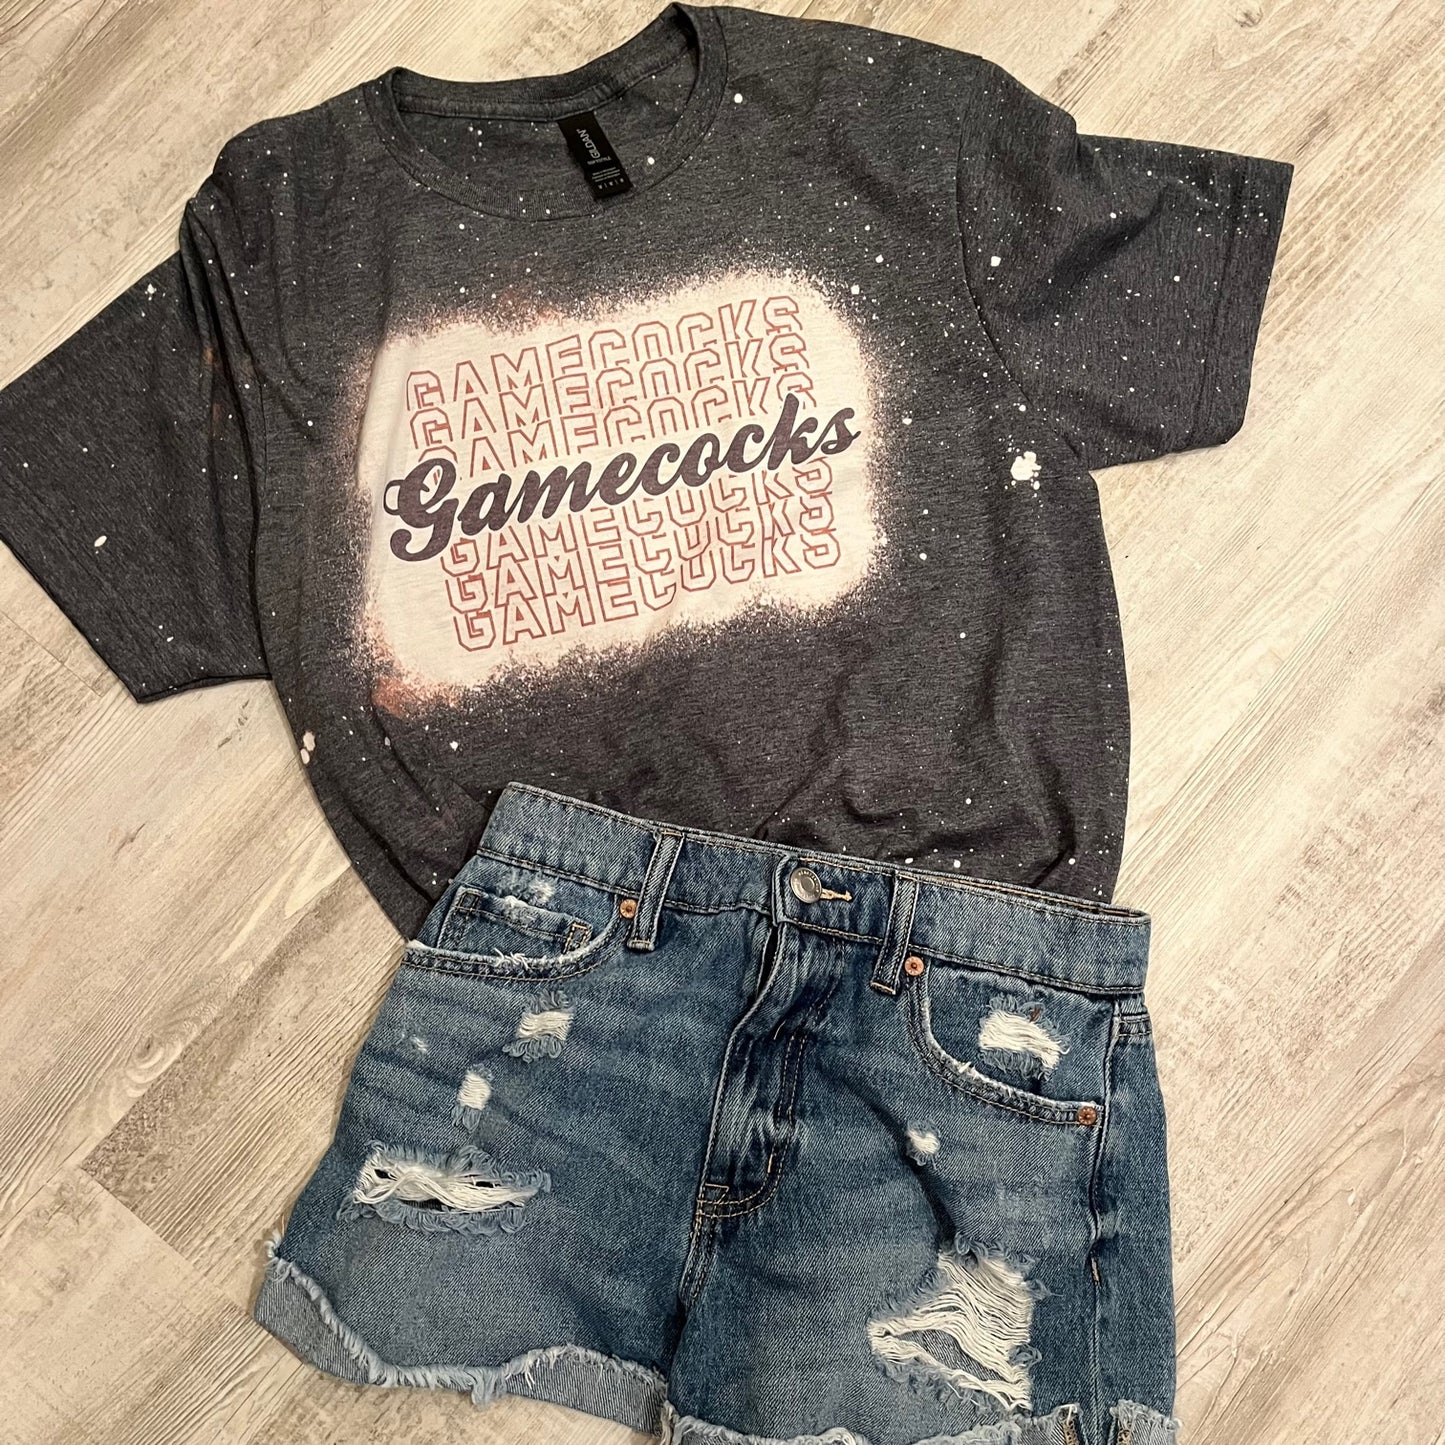 Gamecocks Gamecocks Gamecocks Shirt